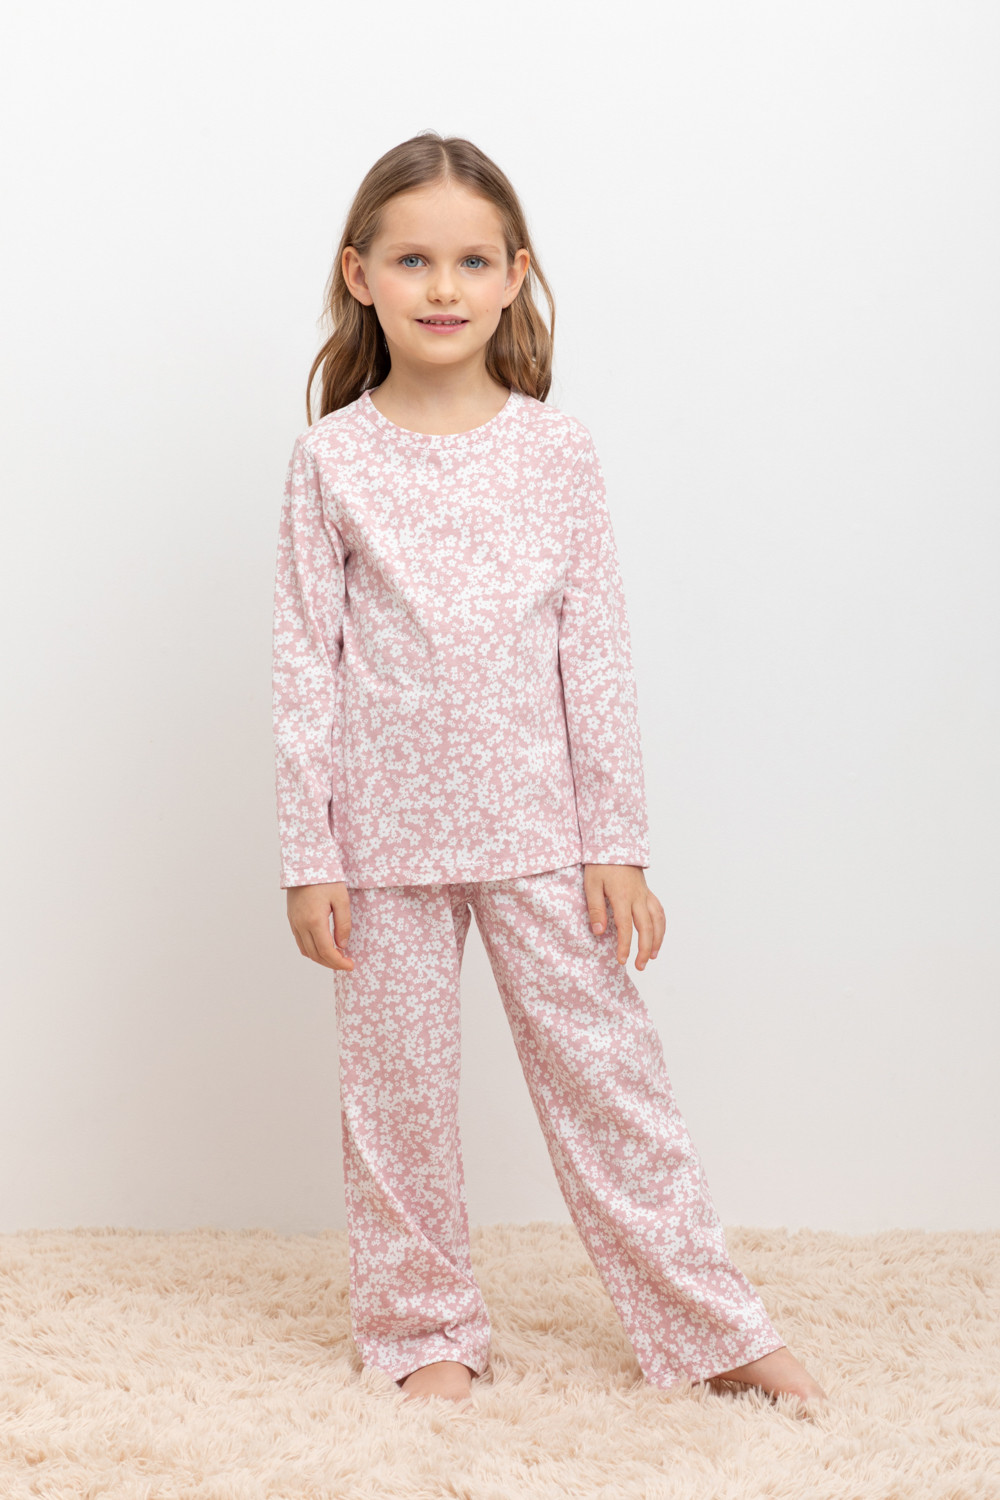 Пижама детская CROCKID МК 1512, М 3055-5, бледно-лиловый, цветочки, 134